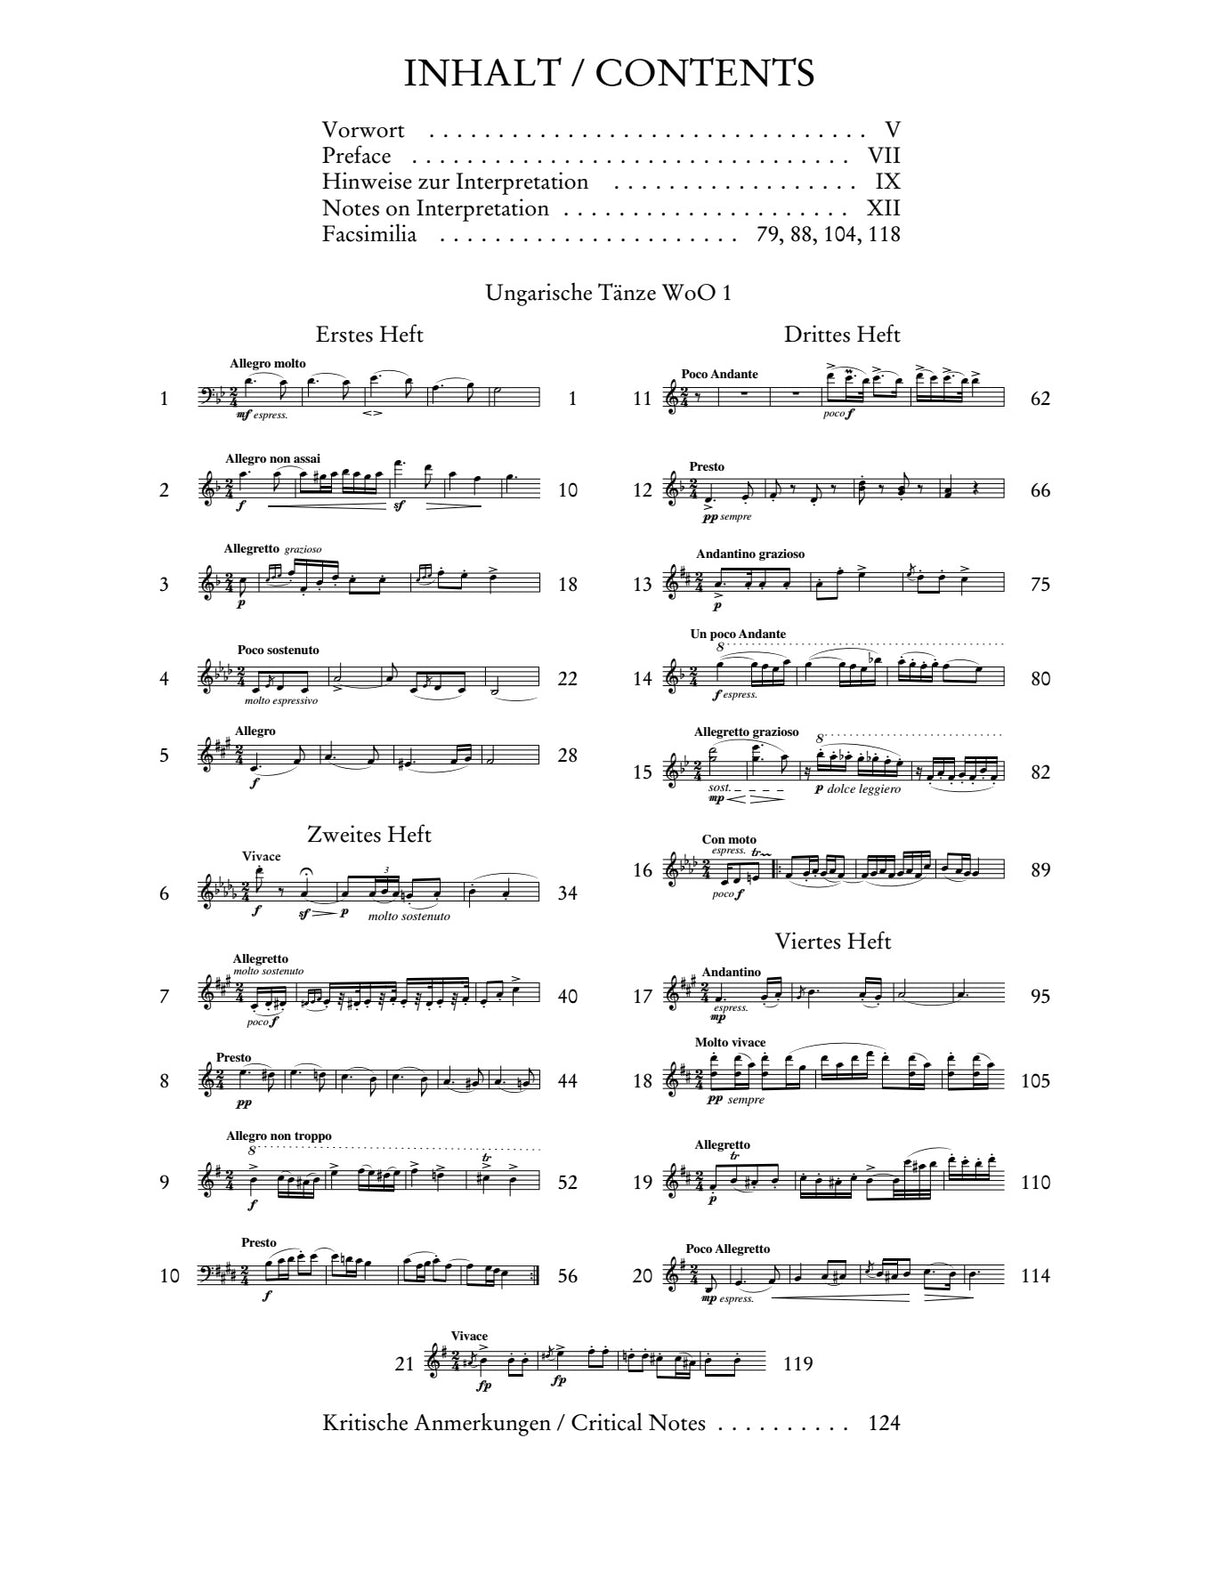 Brahms: Hungarian Dances, Nos. 1-21